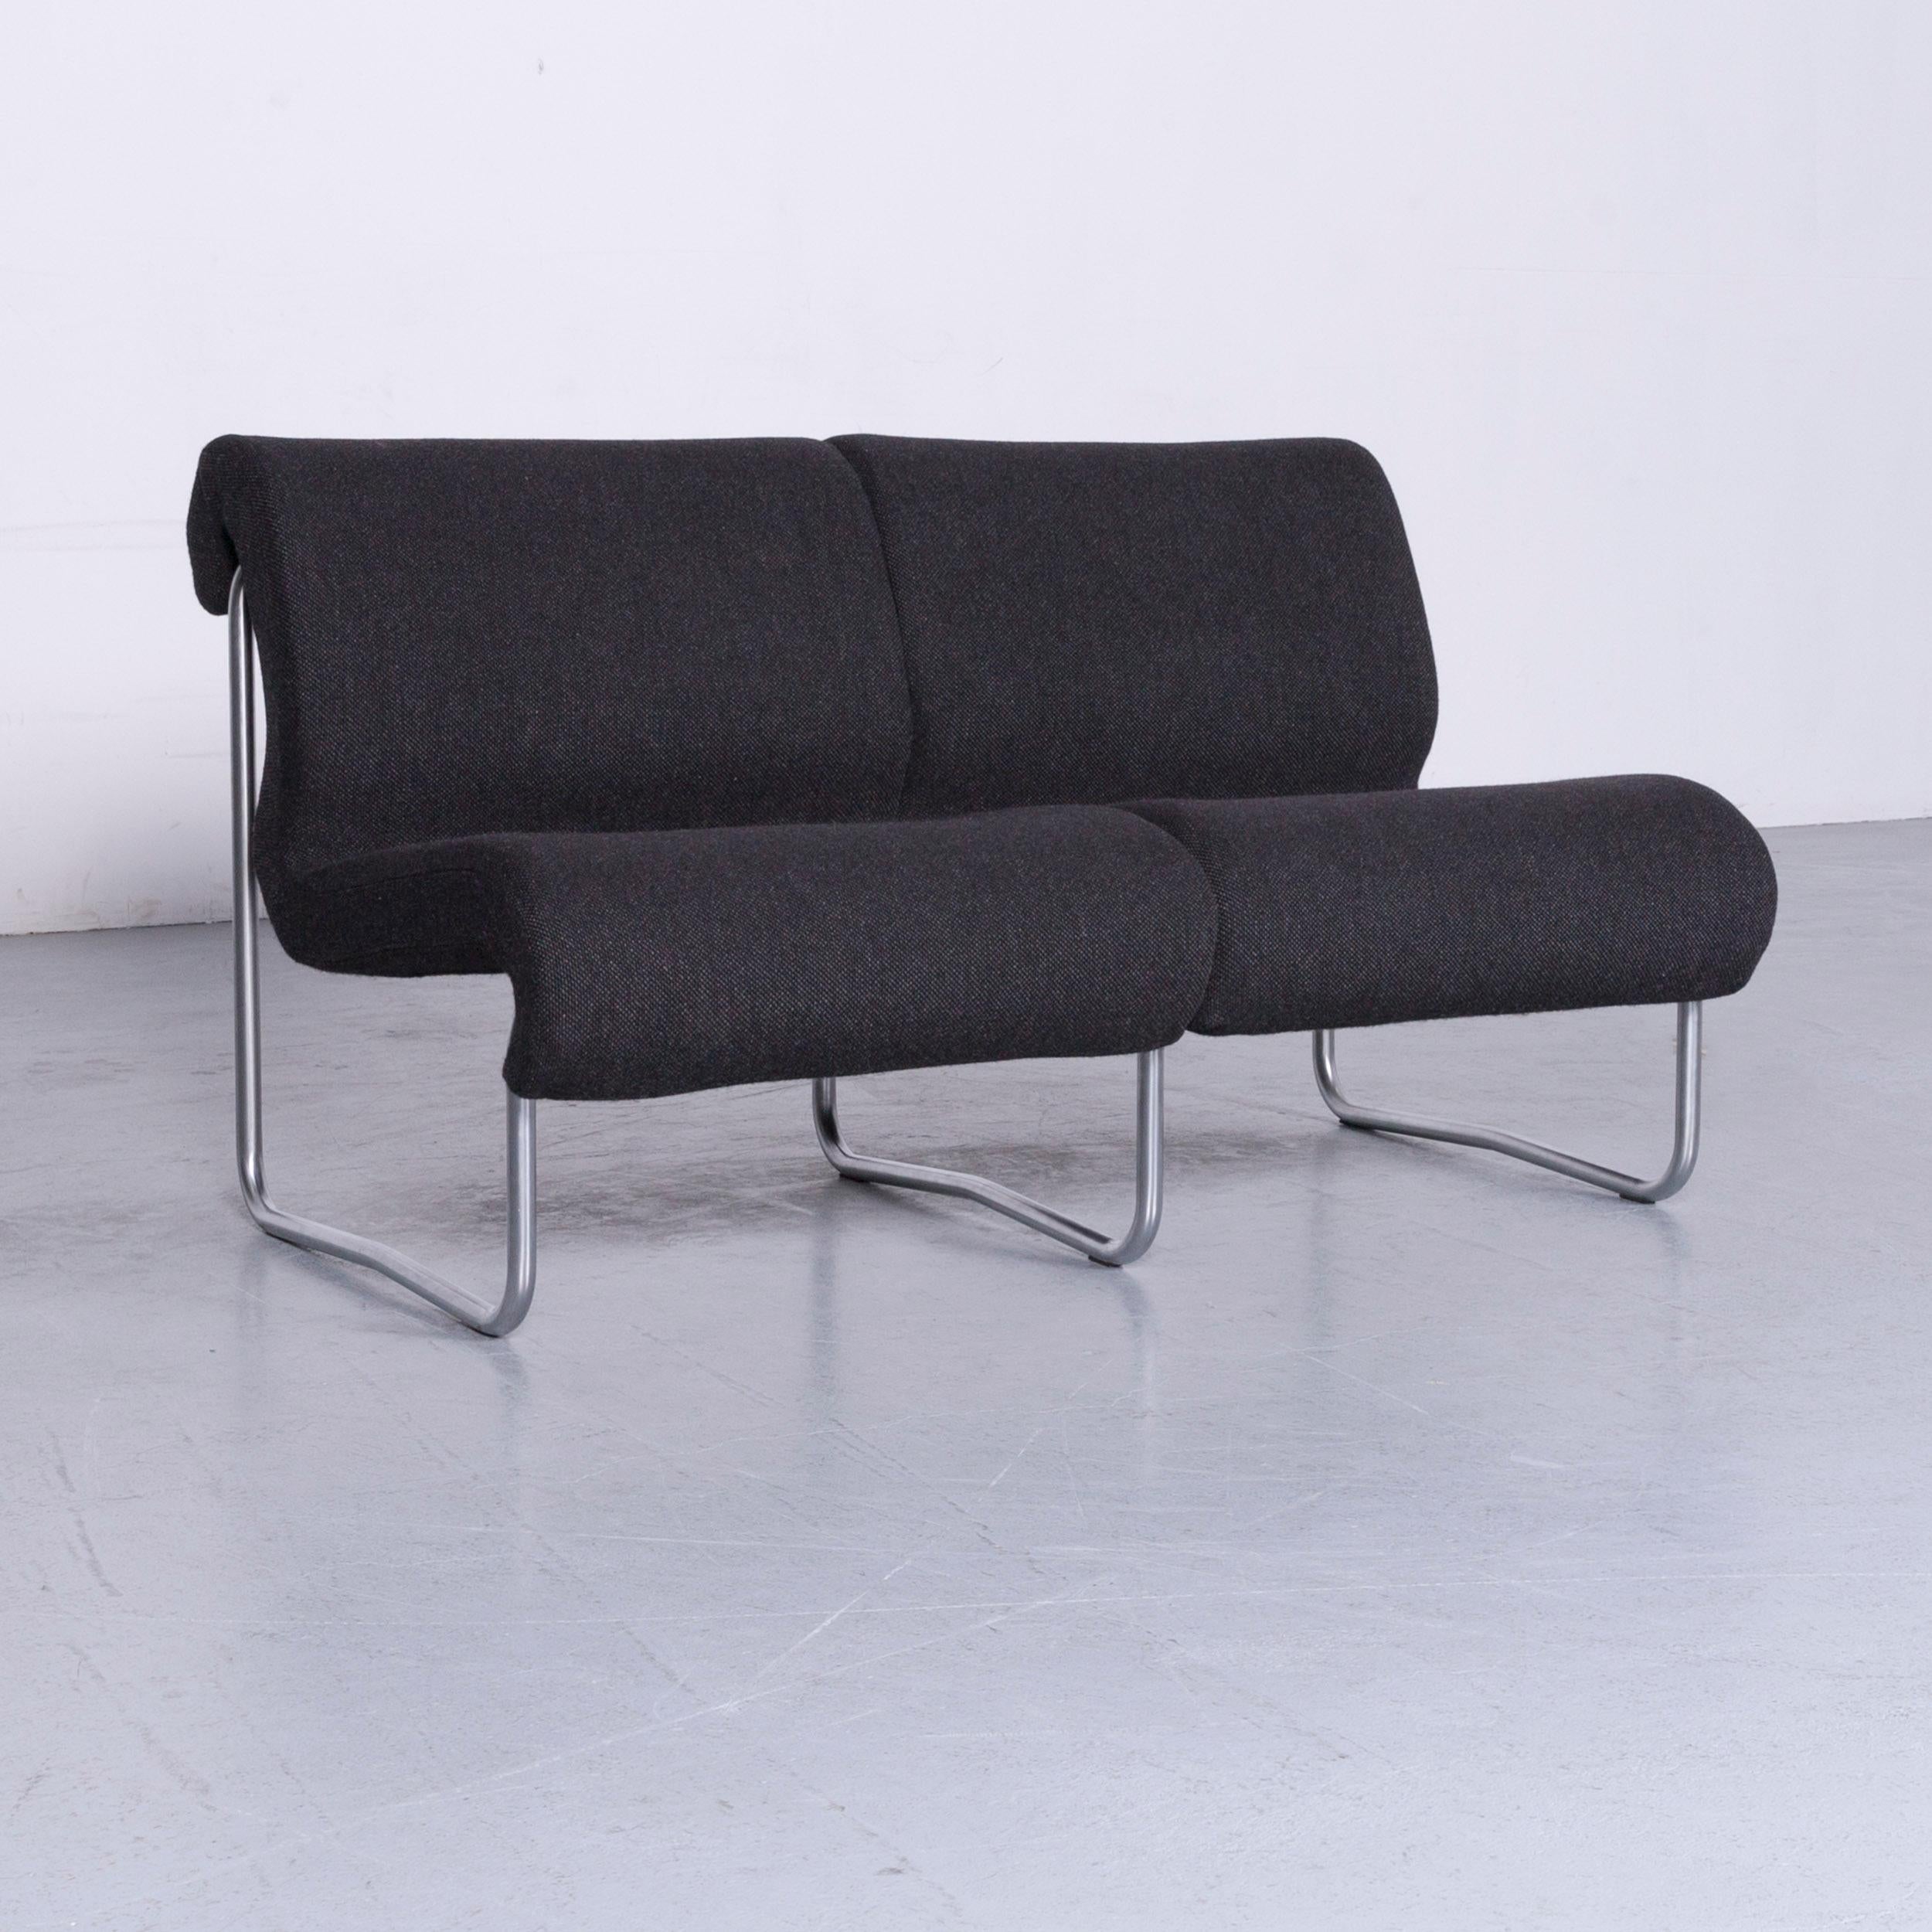 Grey colored original Fröscher Sitform designer sofa, designed by Jürgen Lange, in a minimalistic and modern design.